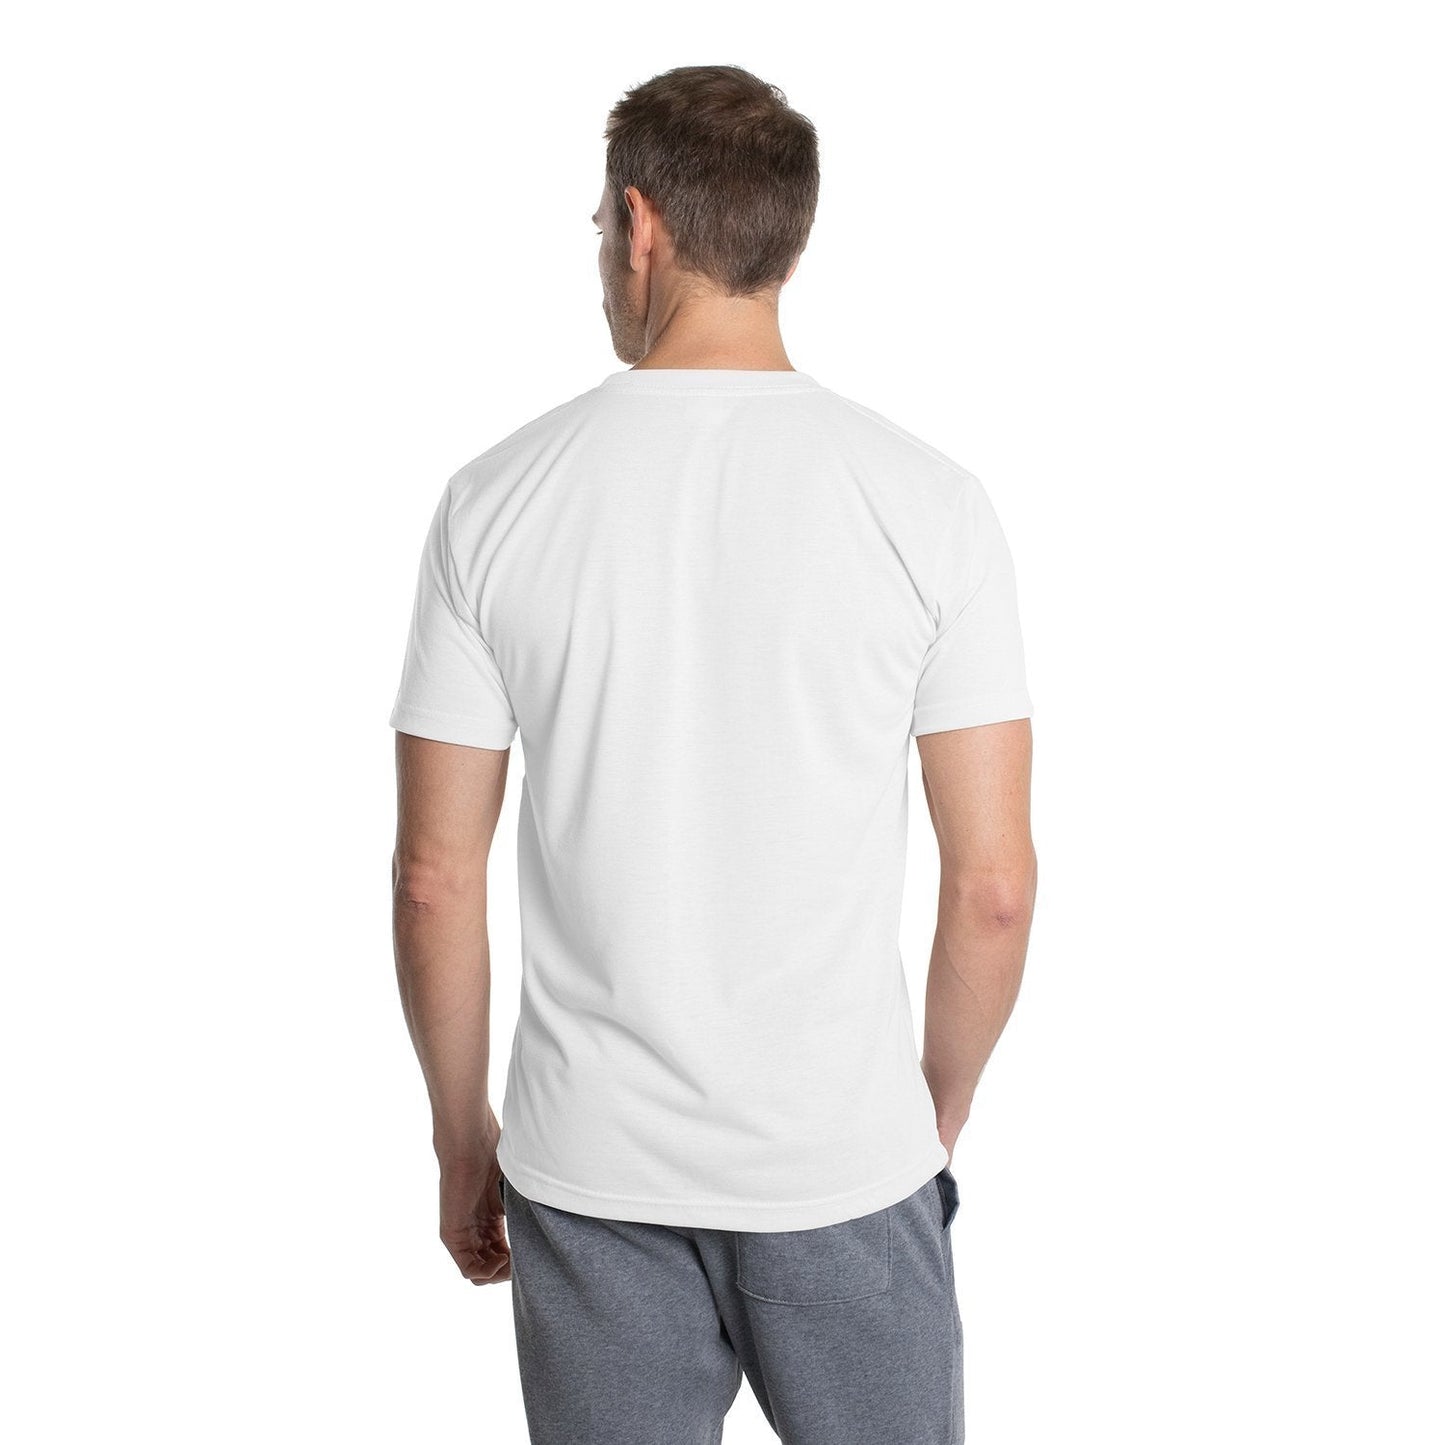 Men's SpunSoft Tech Short Sleeve Shirt